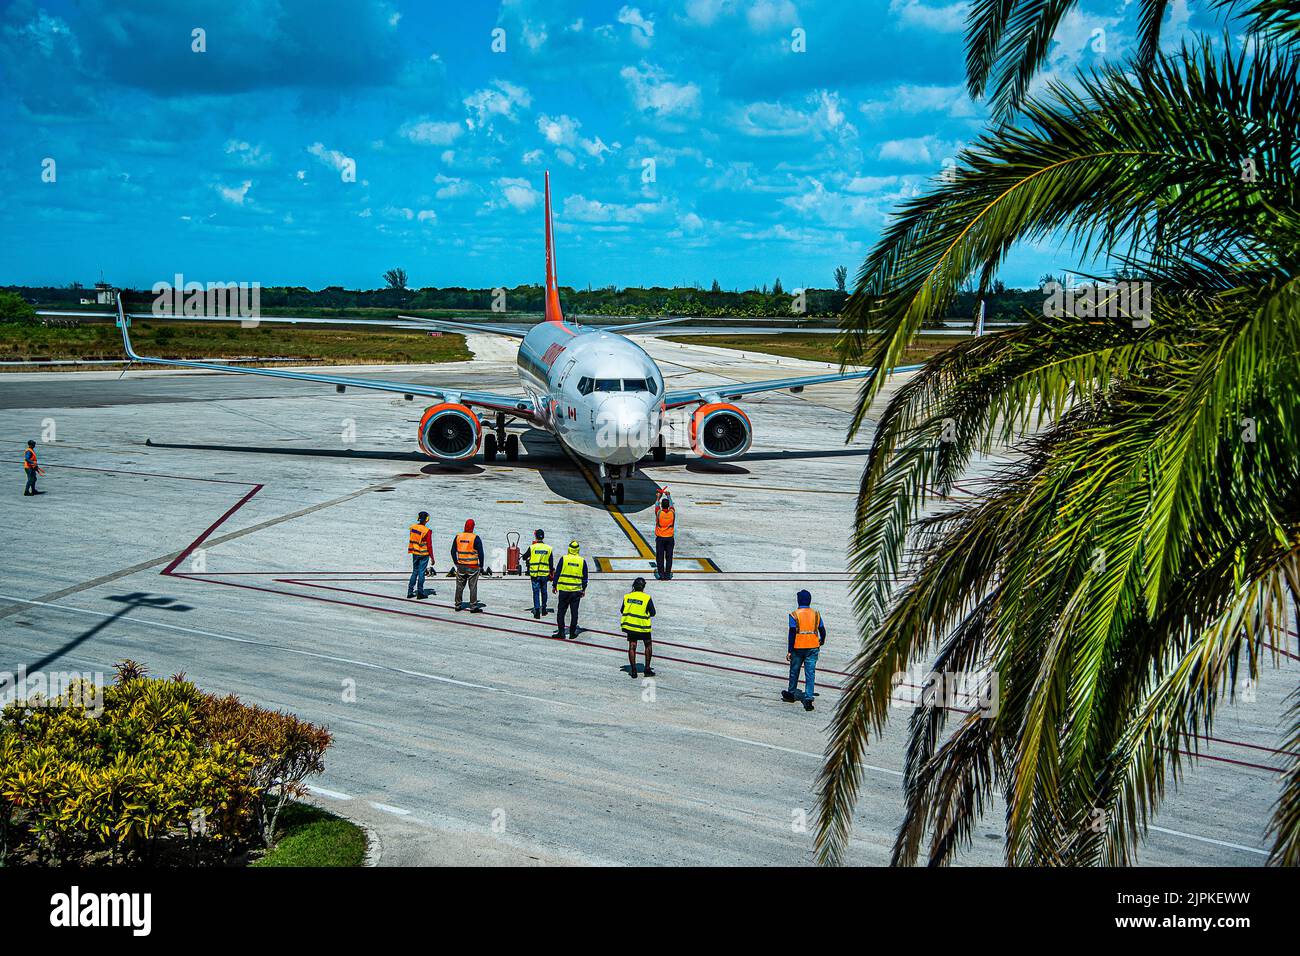 Aereo Air Sunwing dopo l'atterraggio all'aeroporto di Holguin a Cuba, andando al gate degli arrivi. Portate il prossimo cambio di turisti alle localita' intorno a Holguin Foto Stock